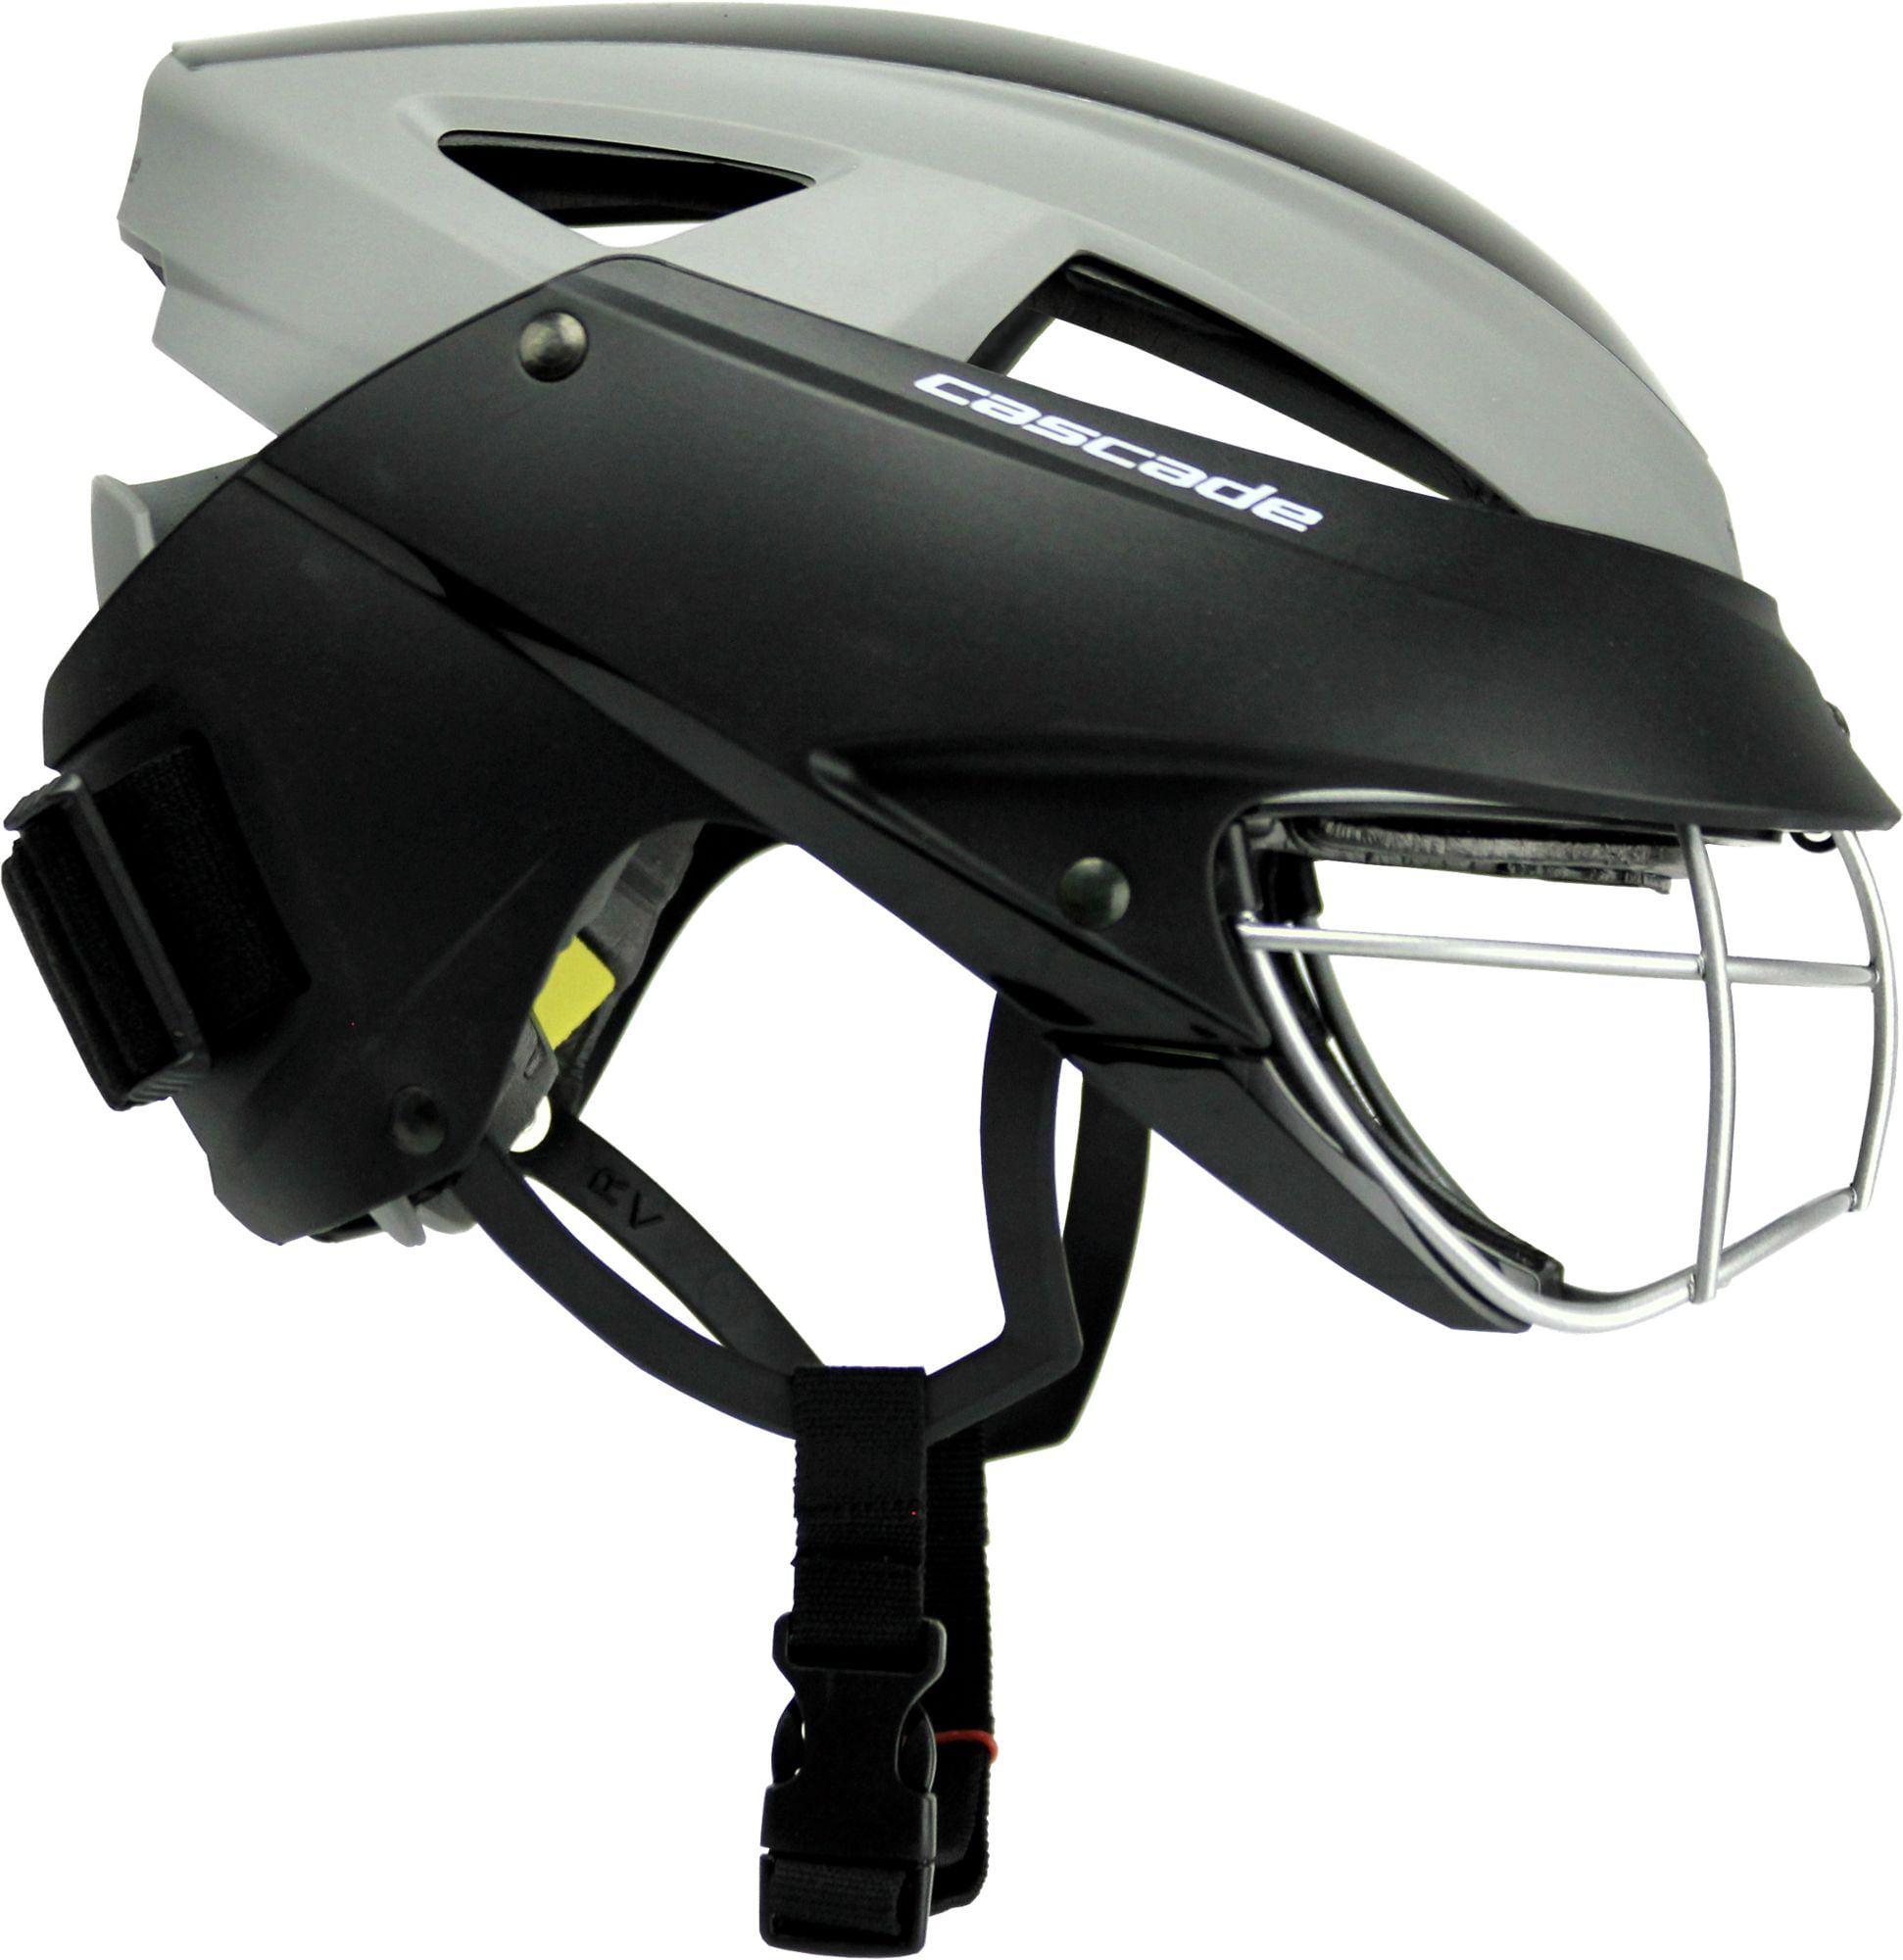 Cascade LX Women's Lacrosse Headgear Helmet With Eye Mask Goggle Royal Blue 